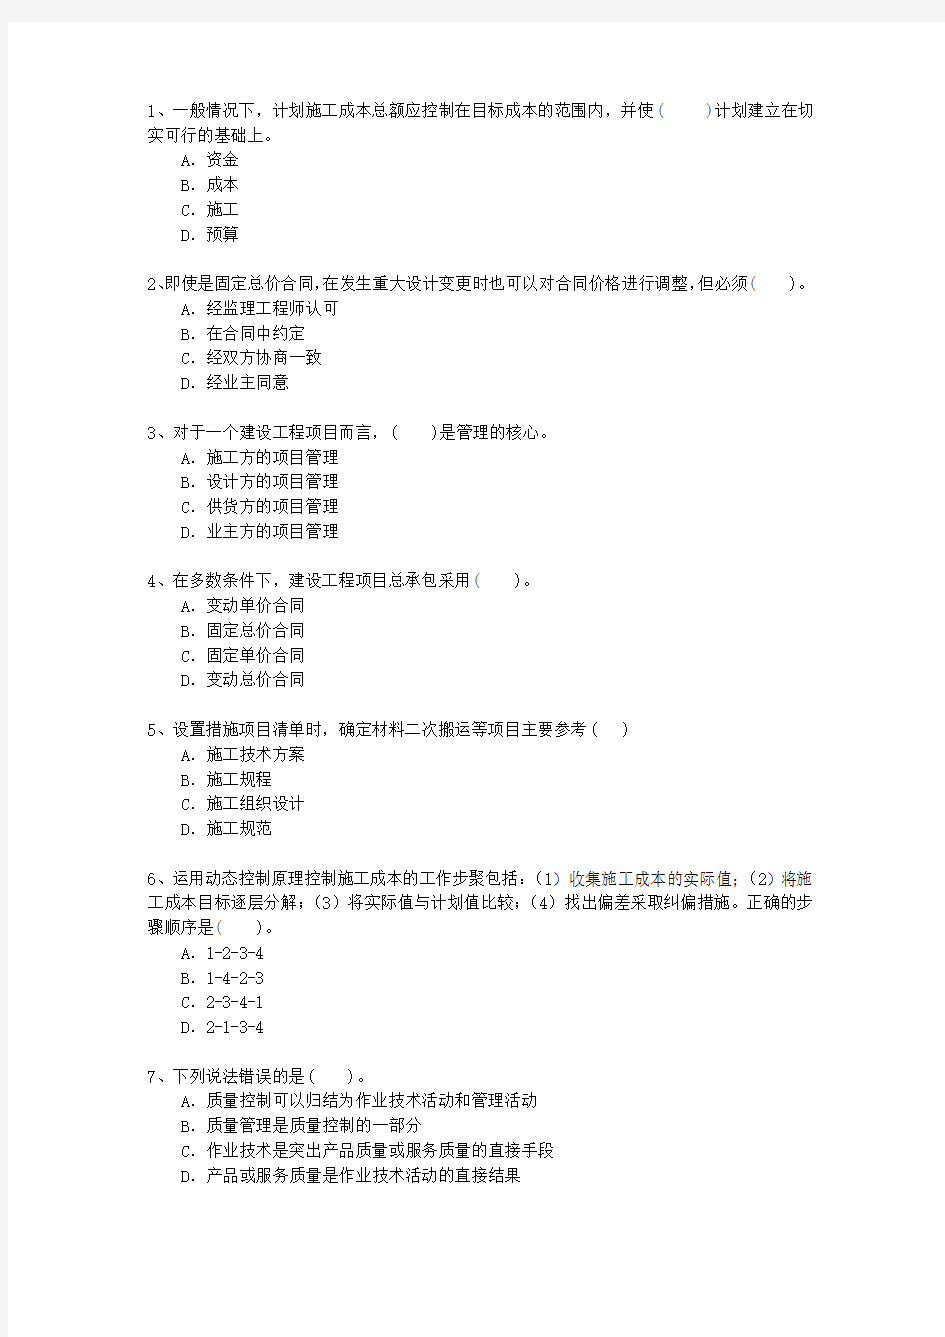 2013三级青海省建造师《法律法规》(必备资料)